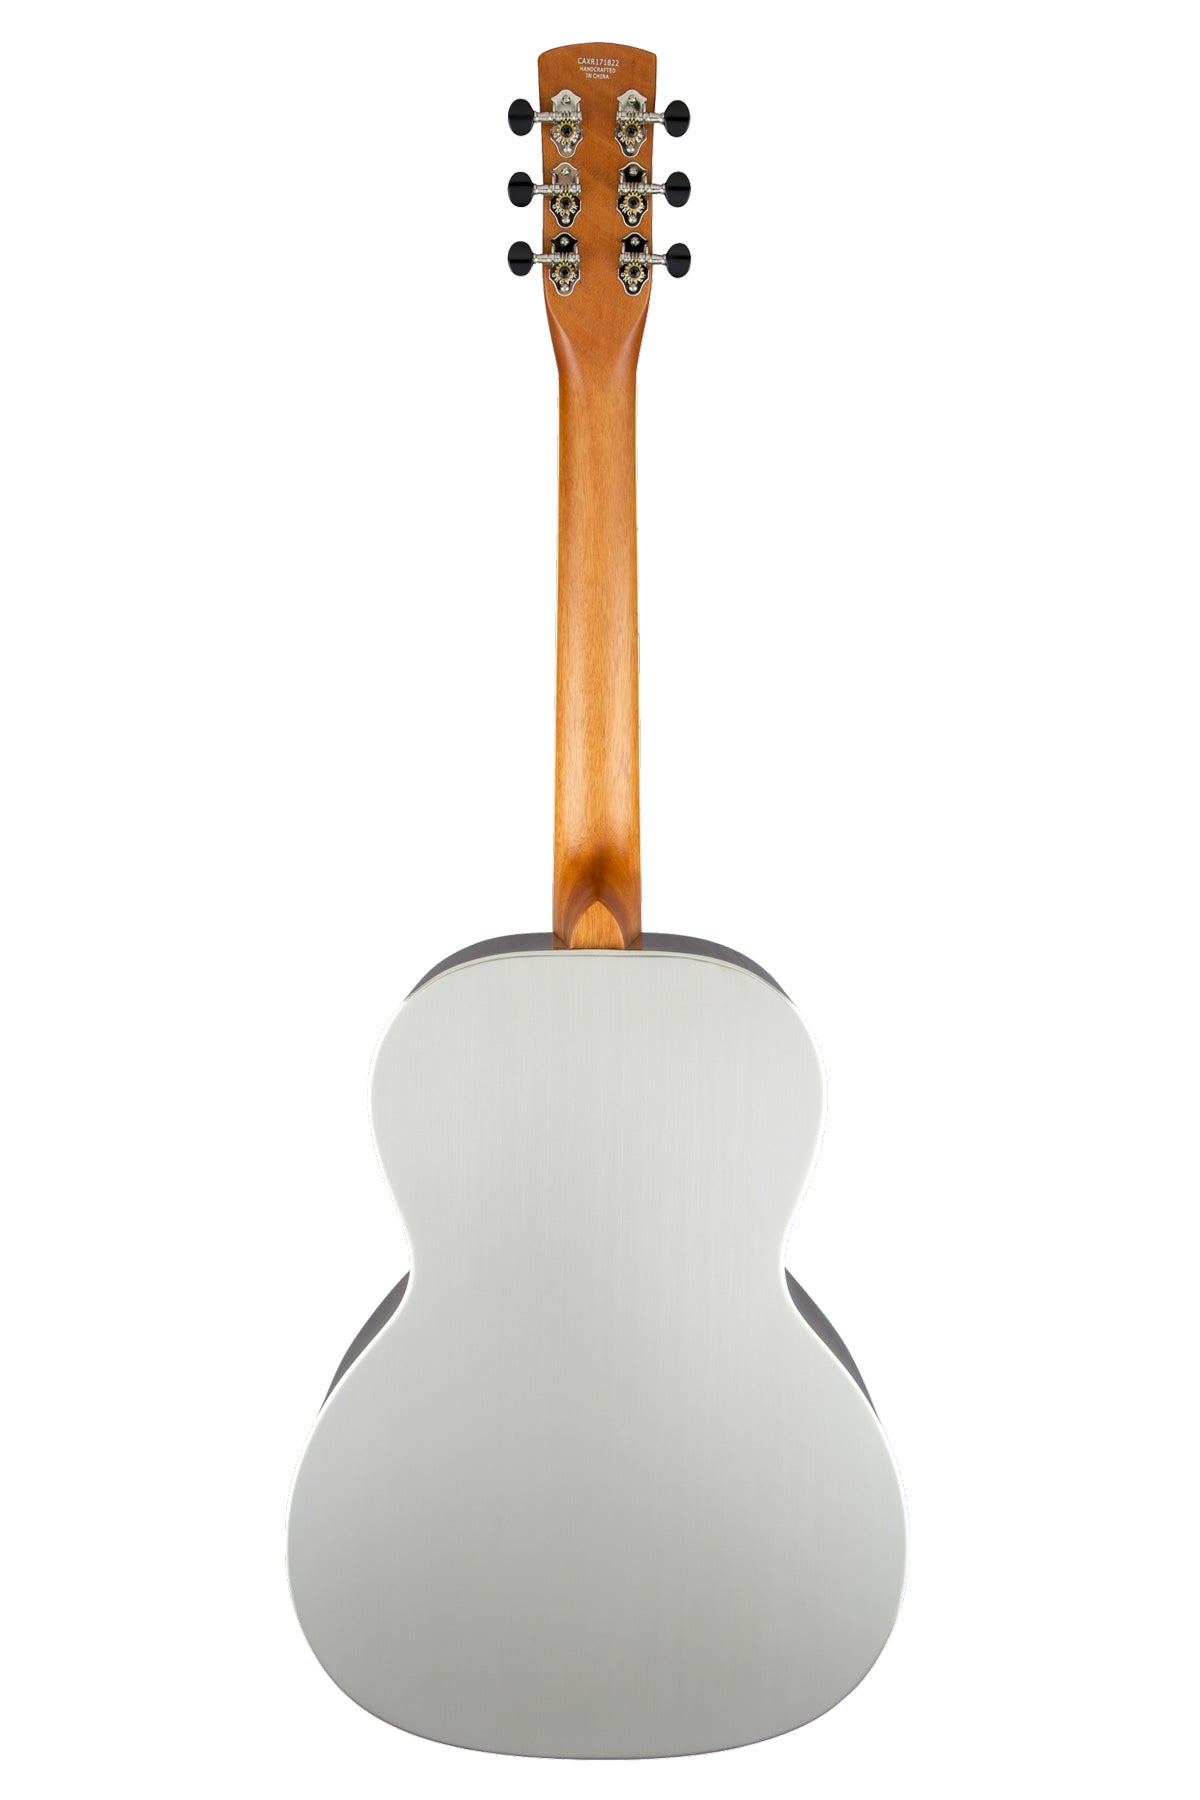 Gretsch G9221 Bobtail Steel Round-Neck A.E., Steel Body Spider Cone Resonator Guitar